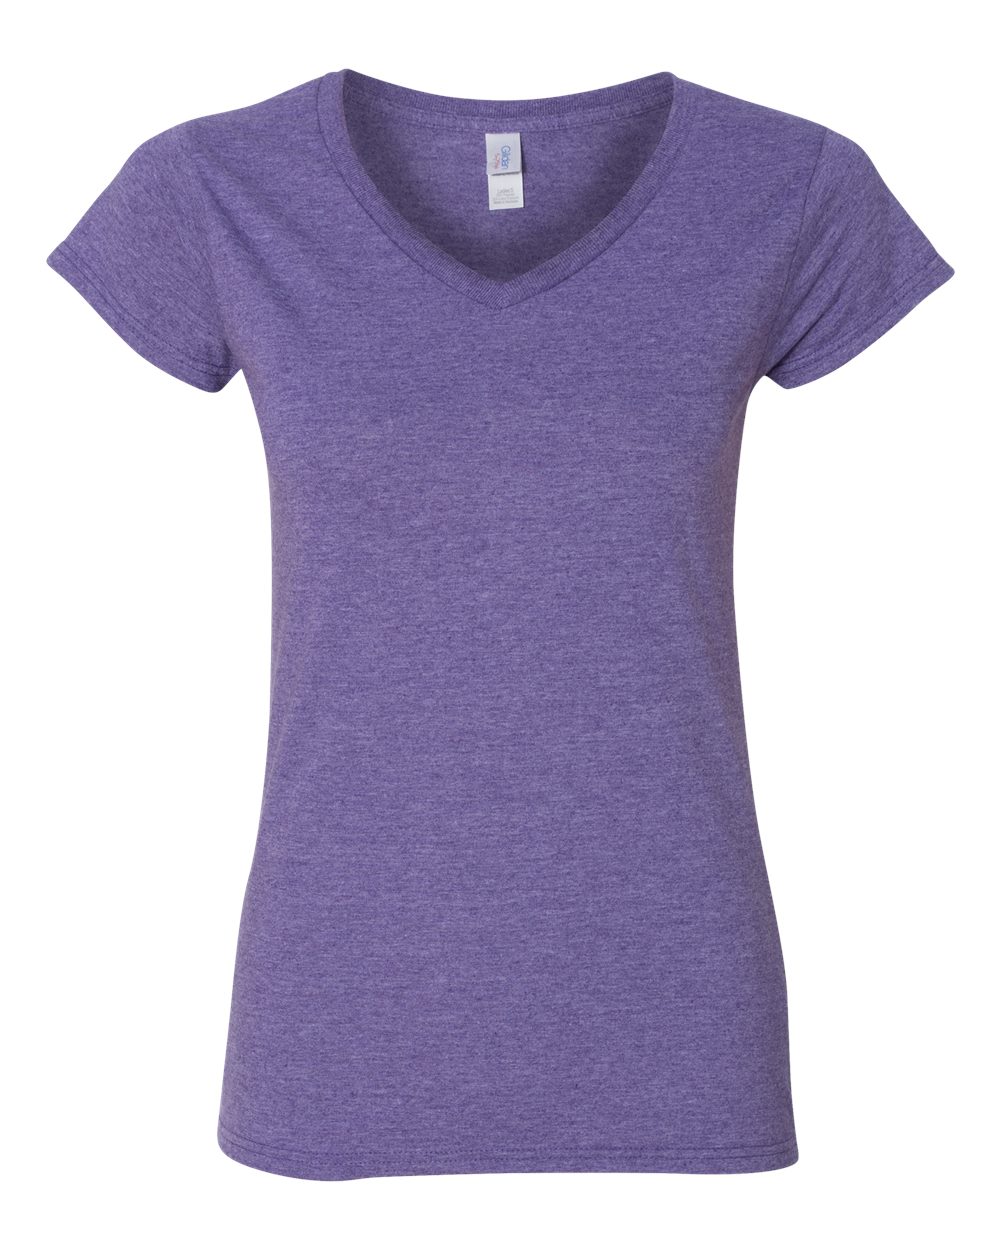 Sample Gildan Softstyle Women's V-Neck T-Shirt